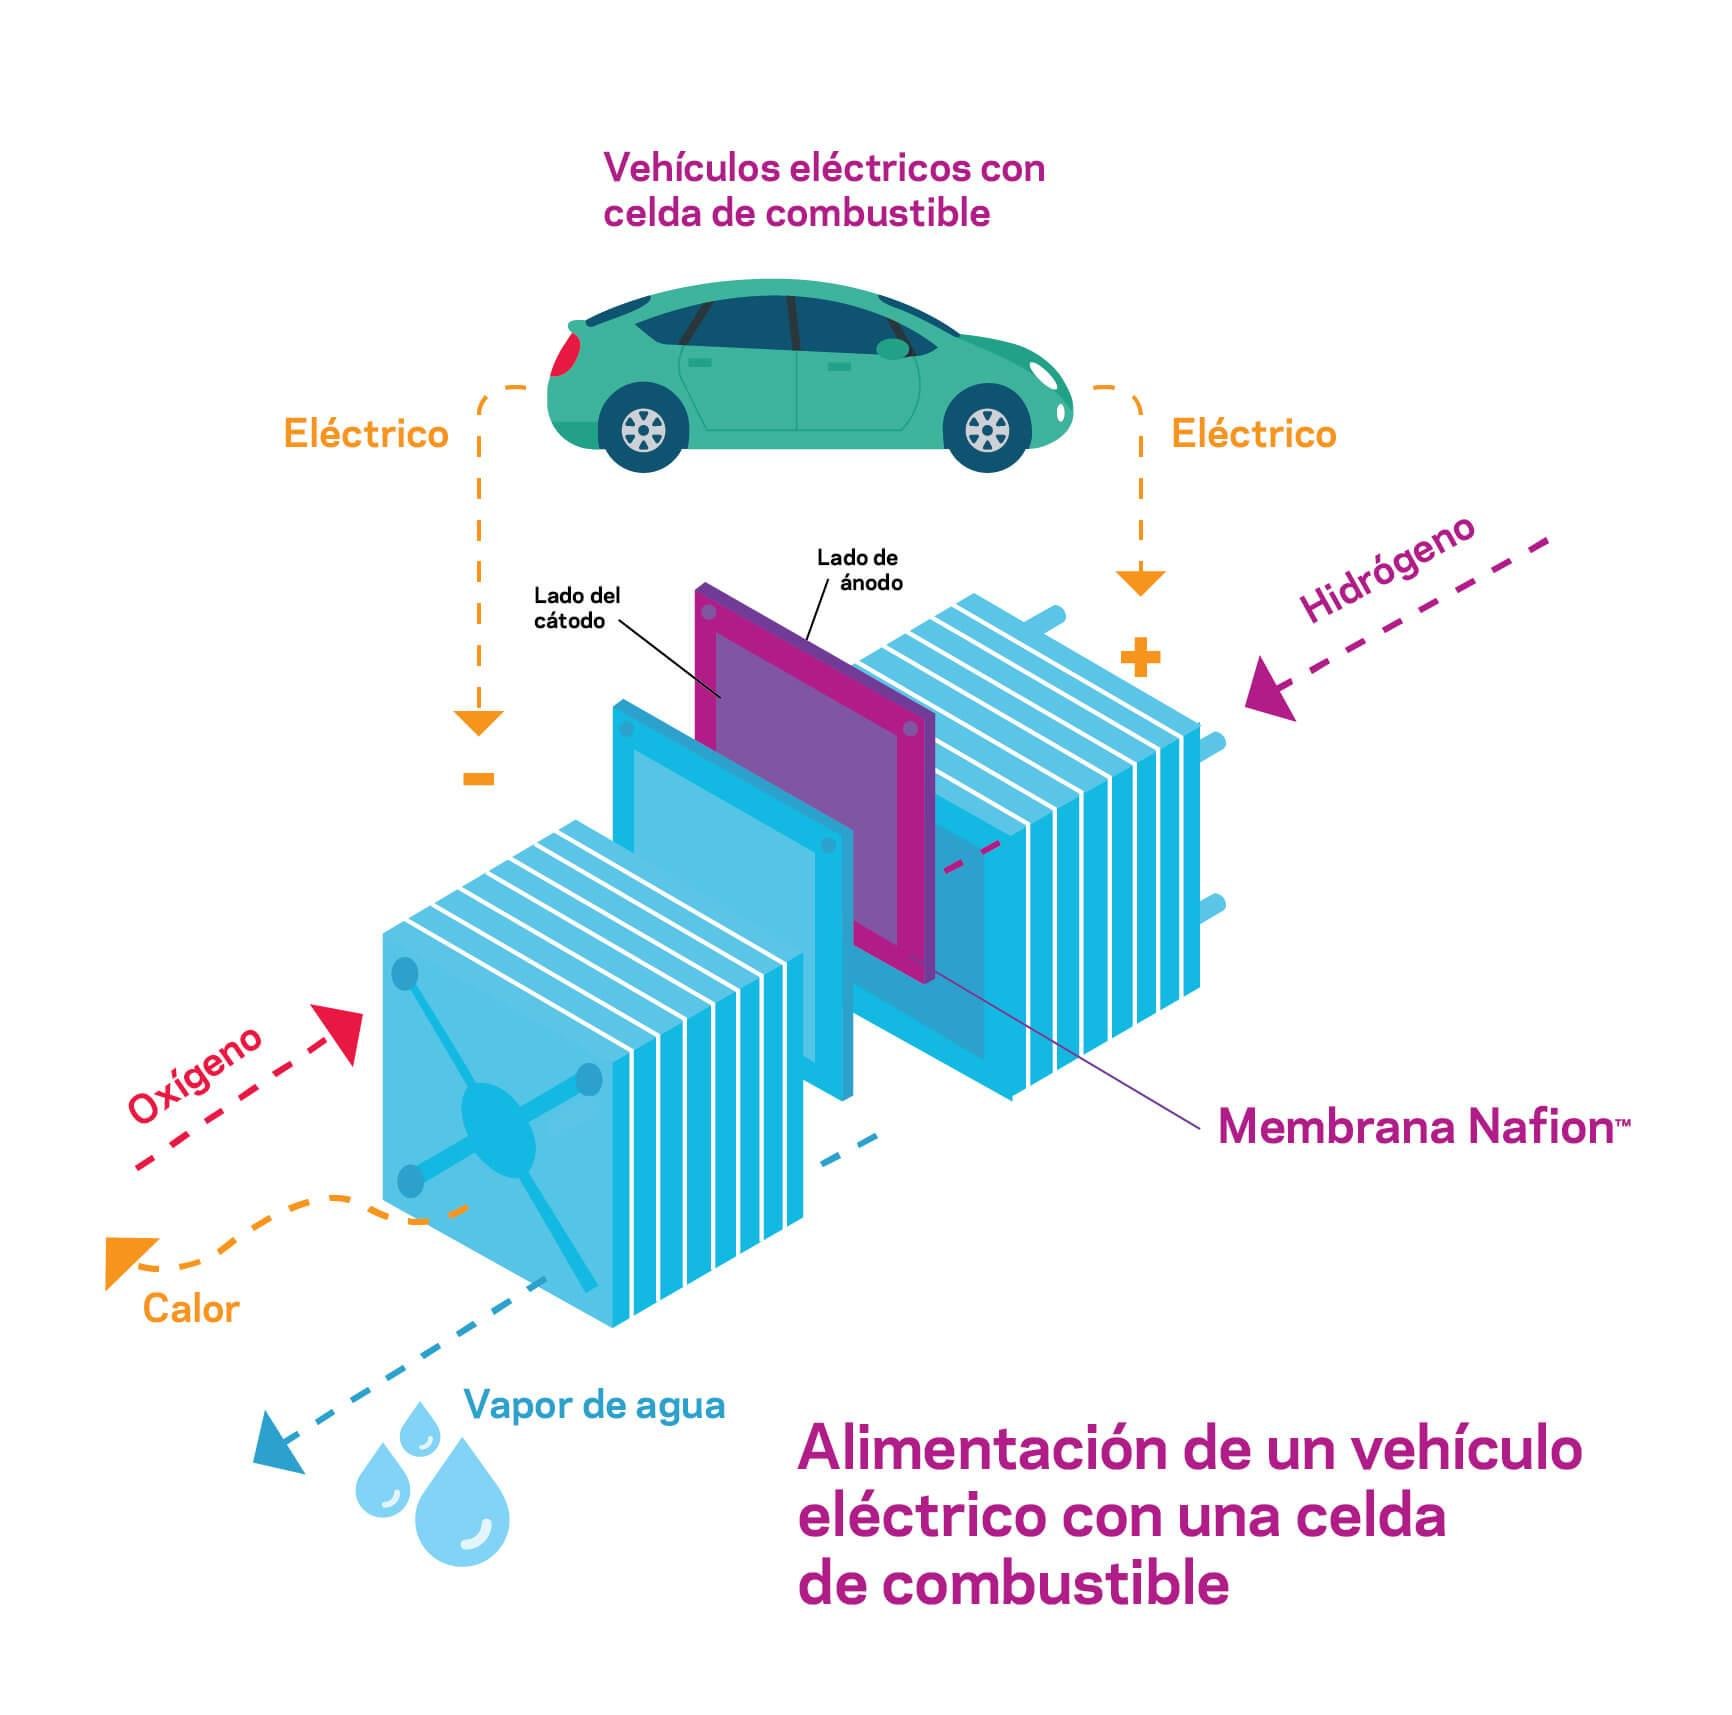 Alimentar un vehículo eléctrico con una celda de combustible